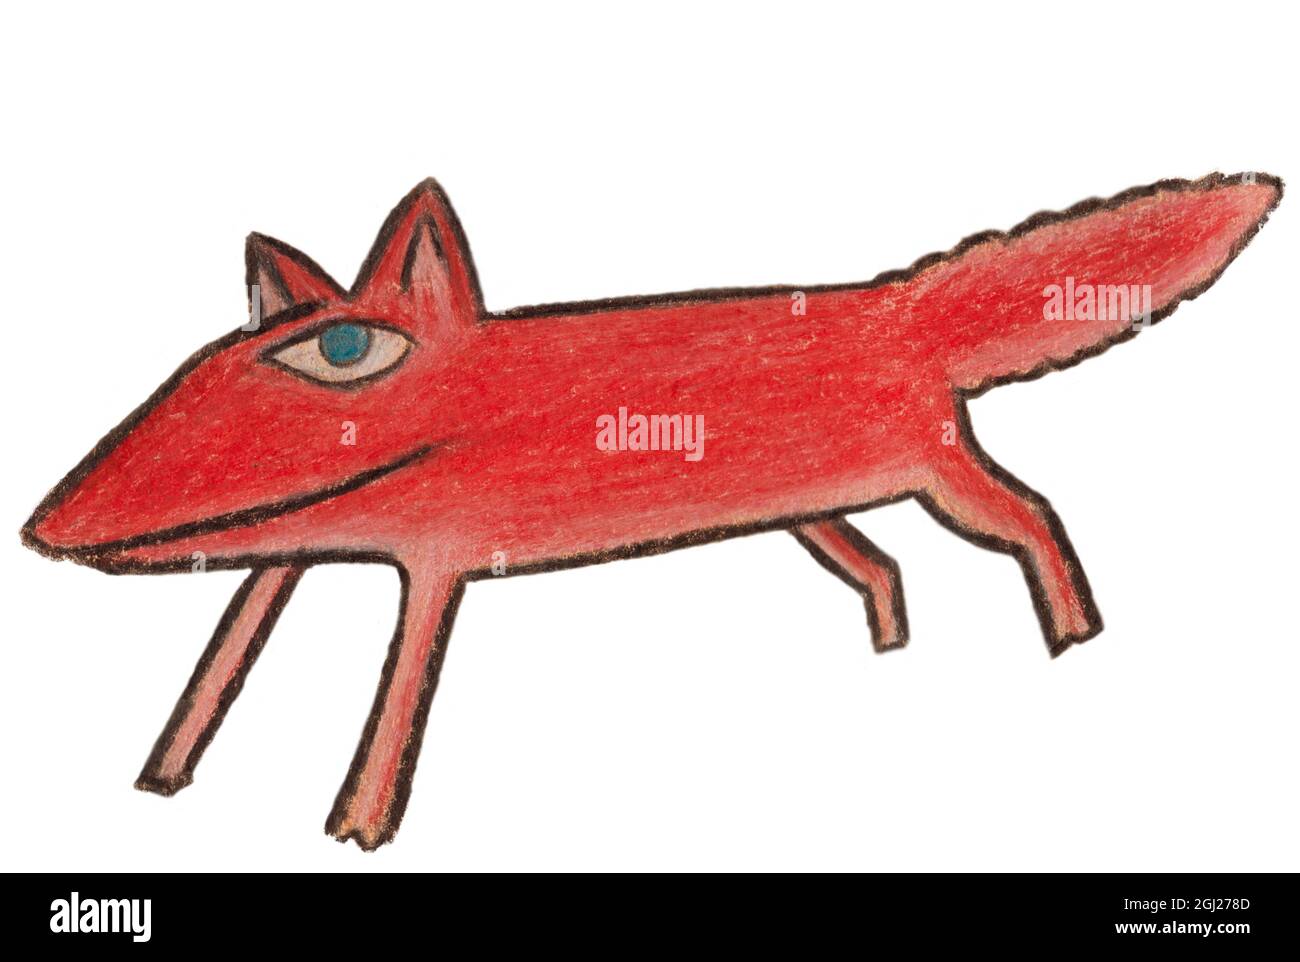 Ilustración hecha con lápices de colores de un zorro rojo riendo. Foto de stock